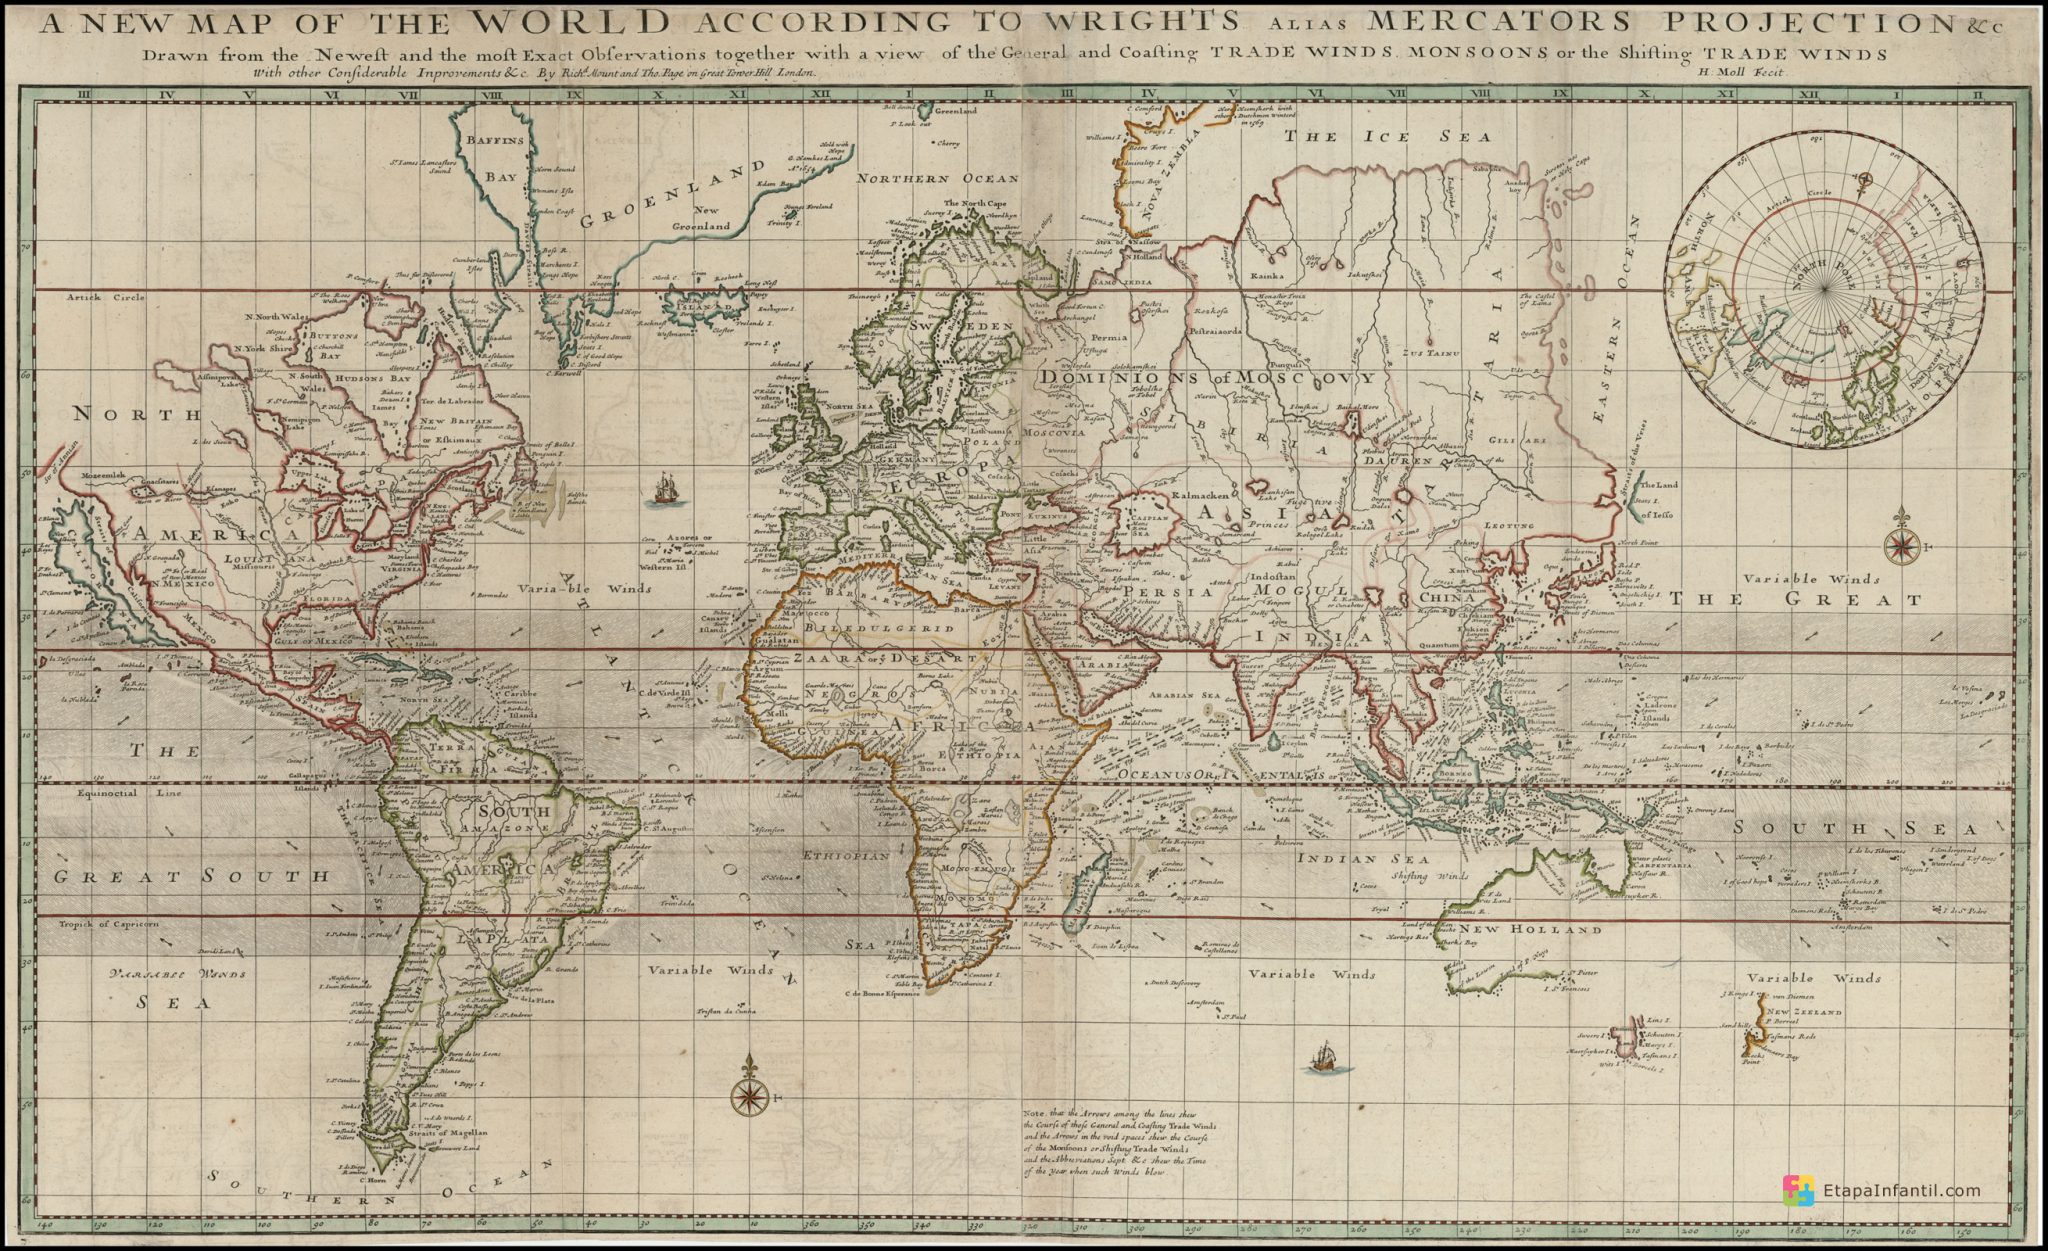 Mapa Múndi: físico, geológico, mundial, terrestre, topográfico e antigo.